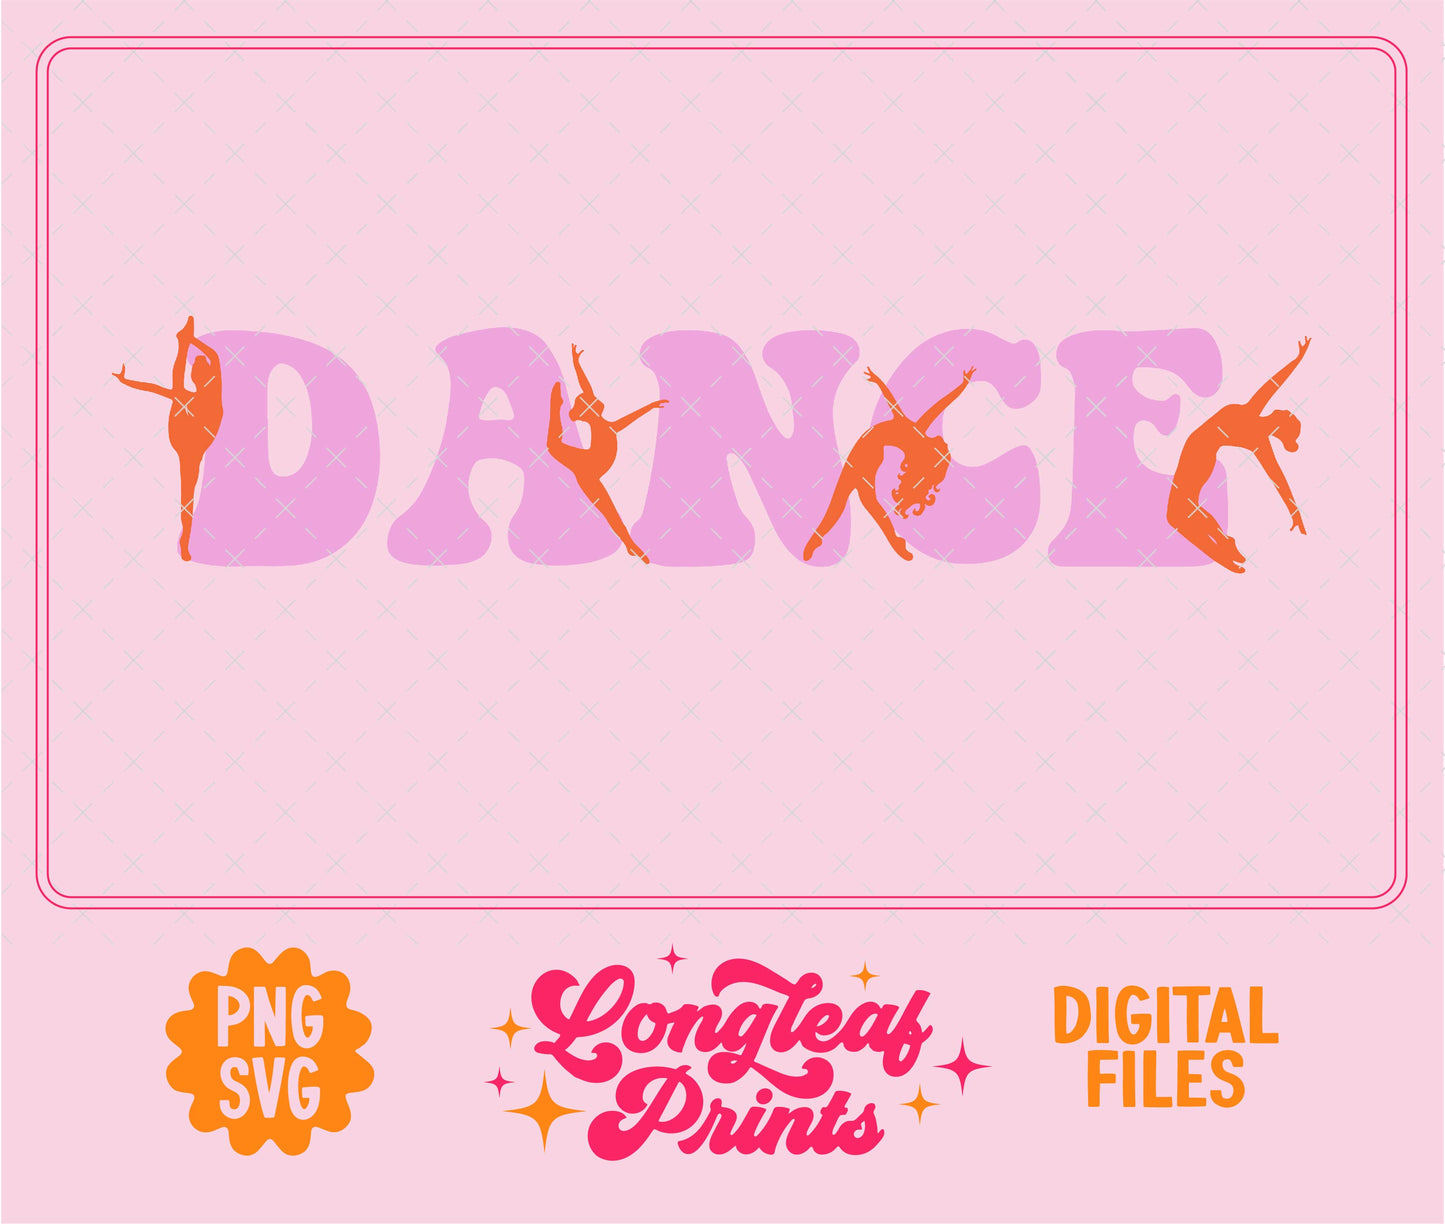 Dance Poses Digital Download Design File